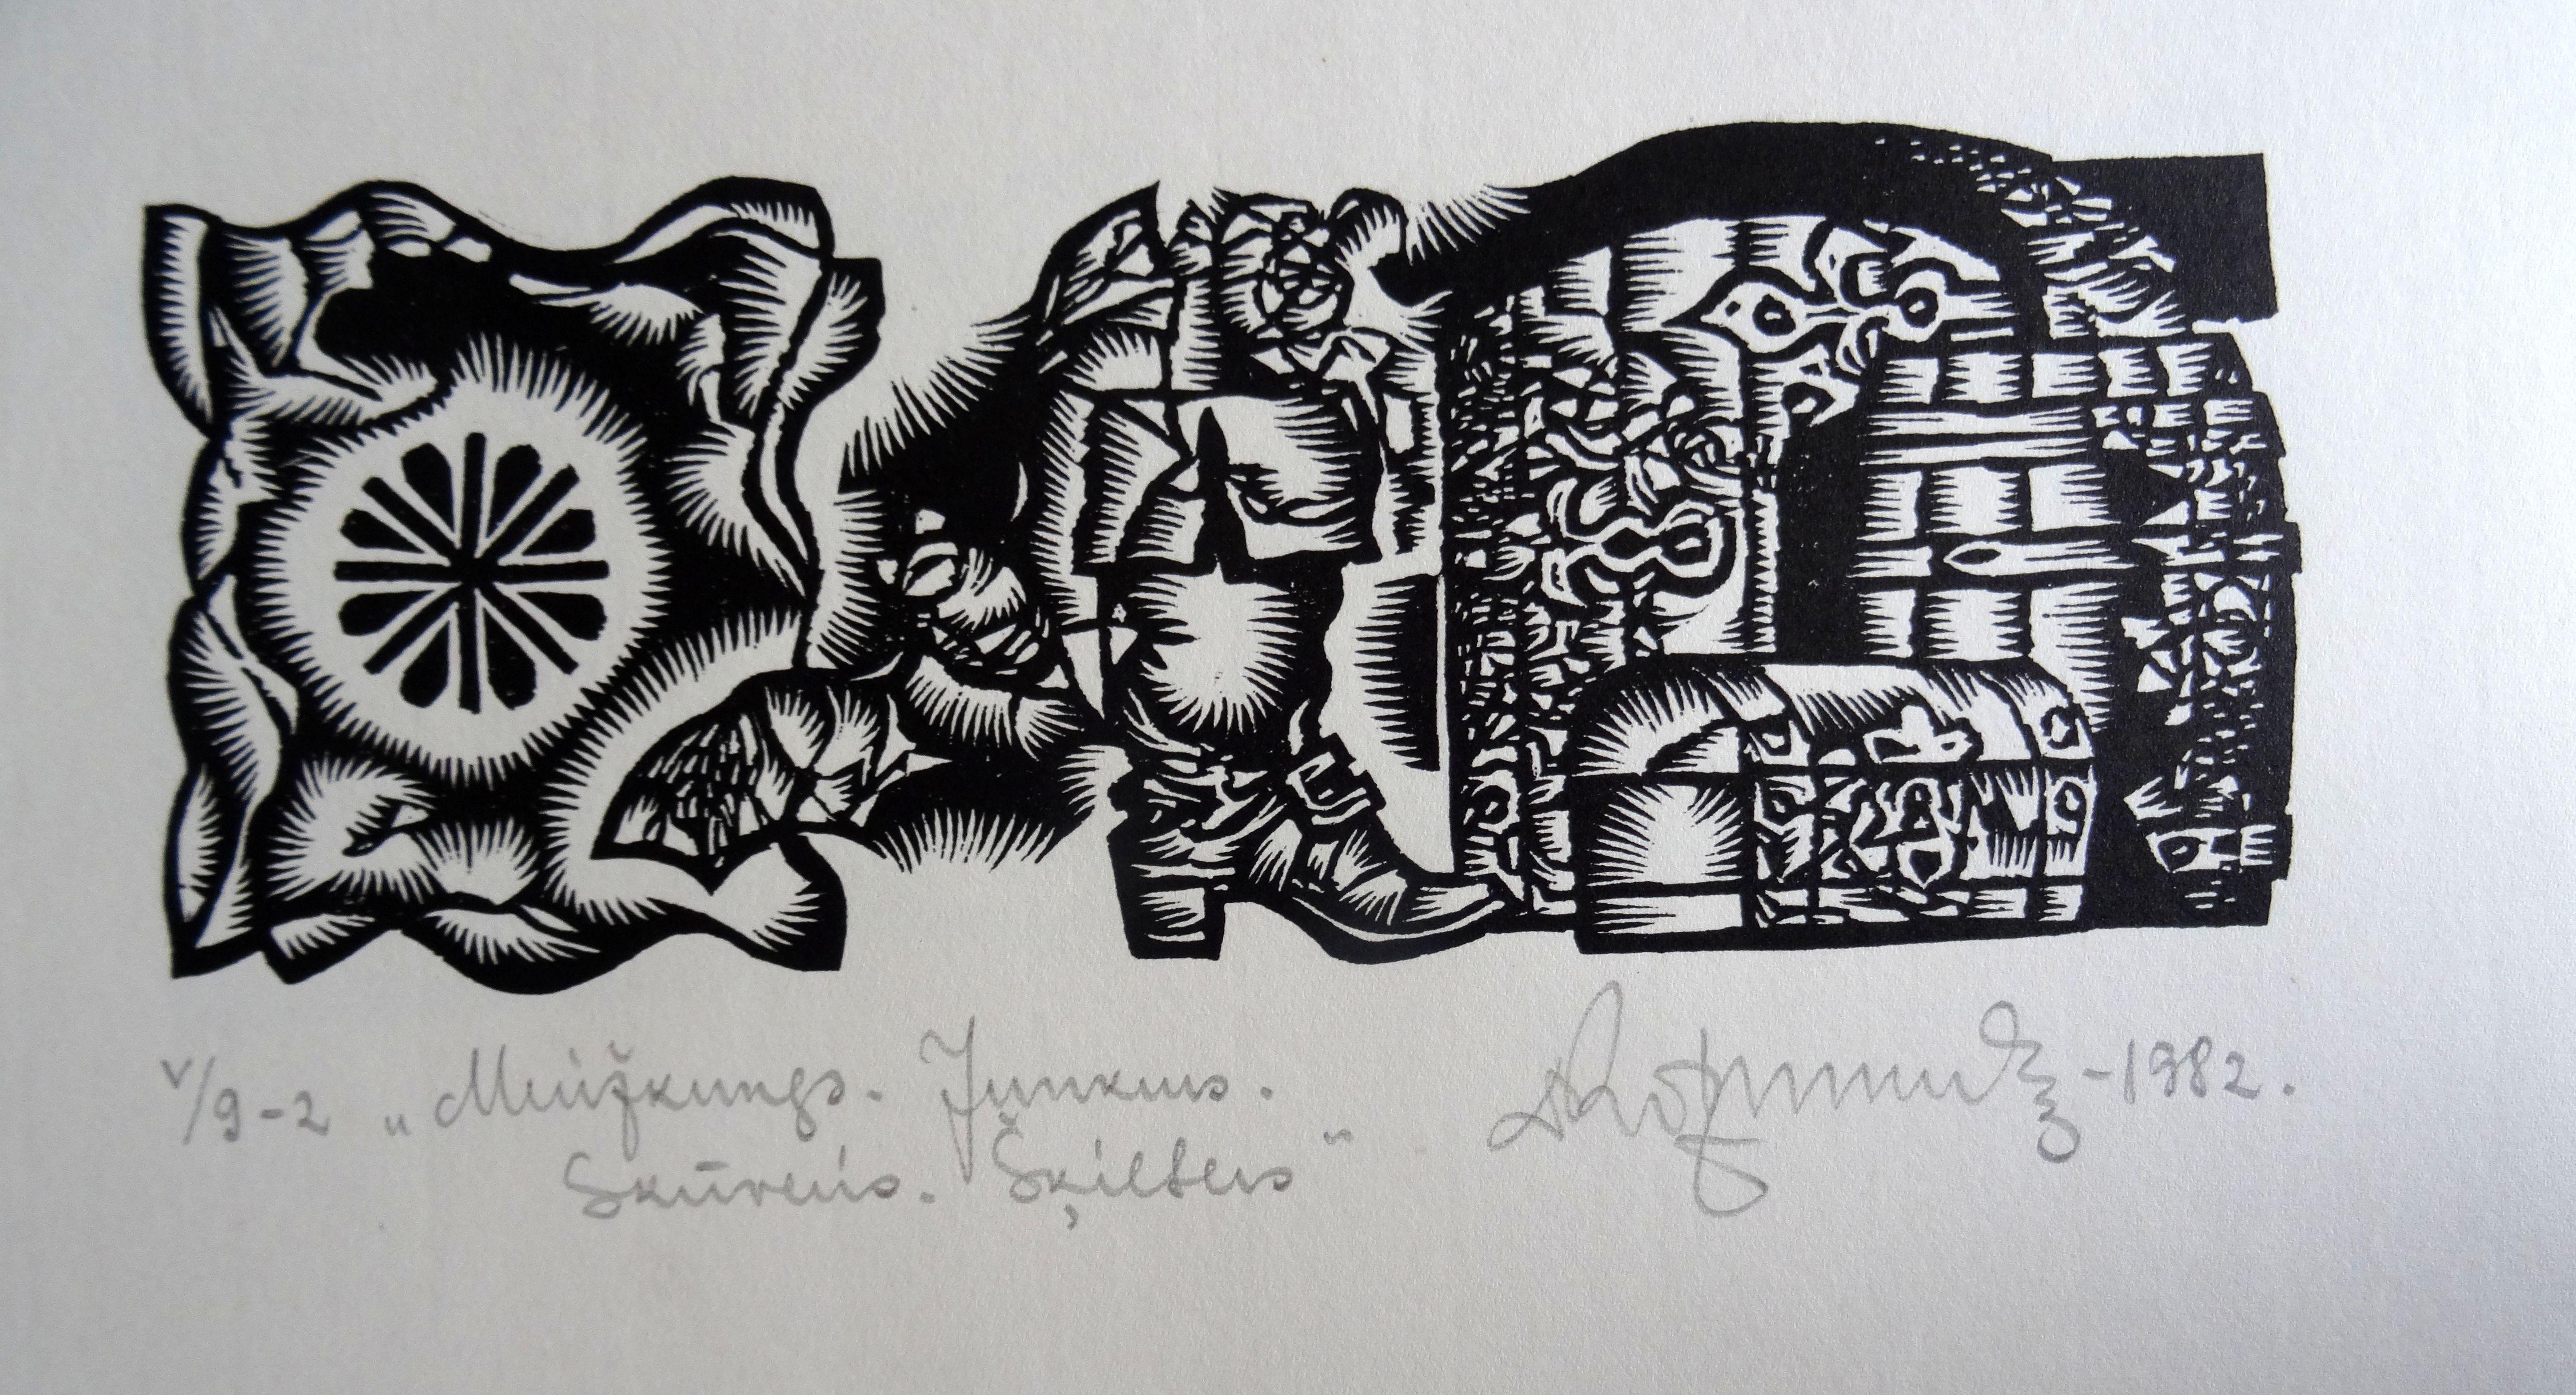 Le seigneur du manoir. 1982. Papier, linogravure, 20 x 34 cm